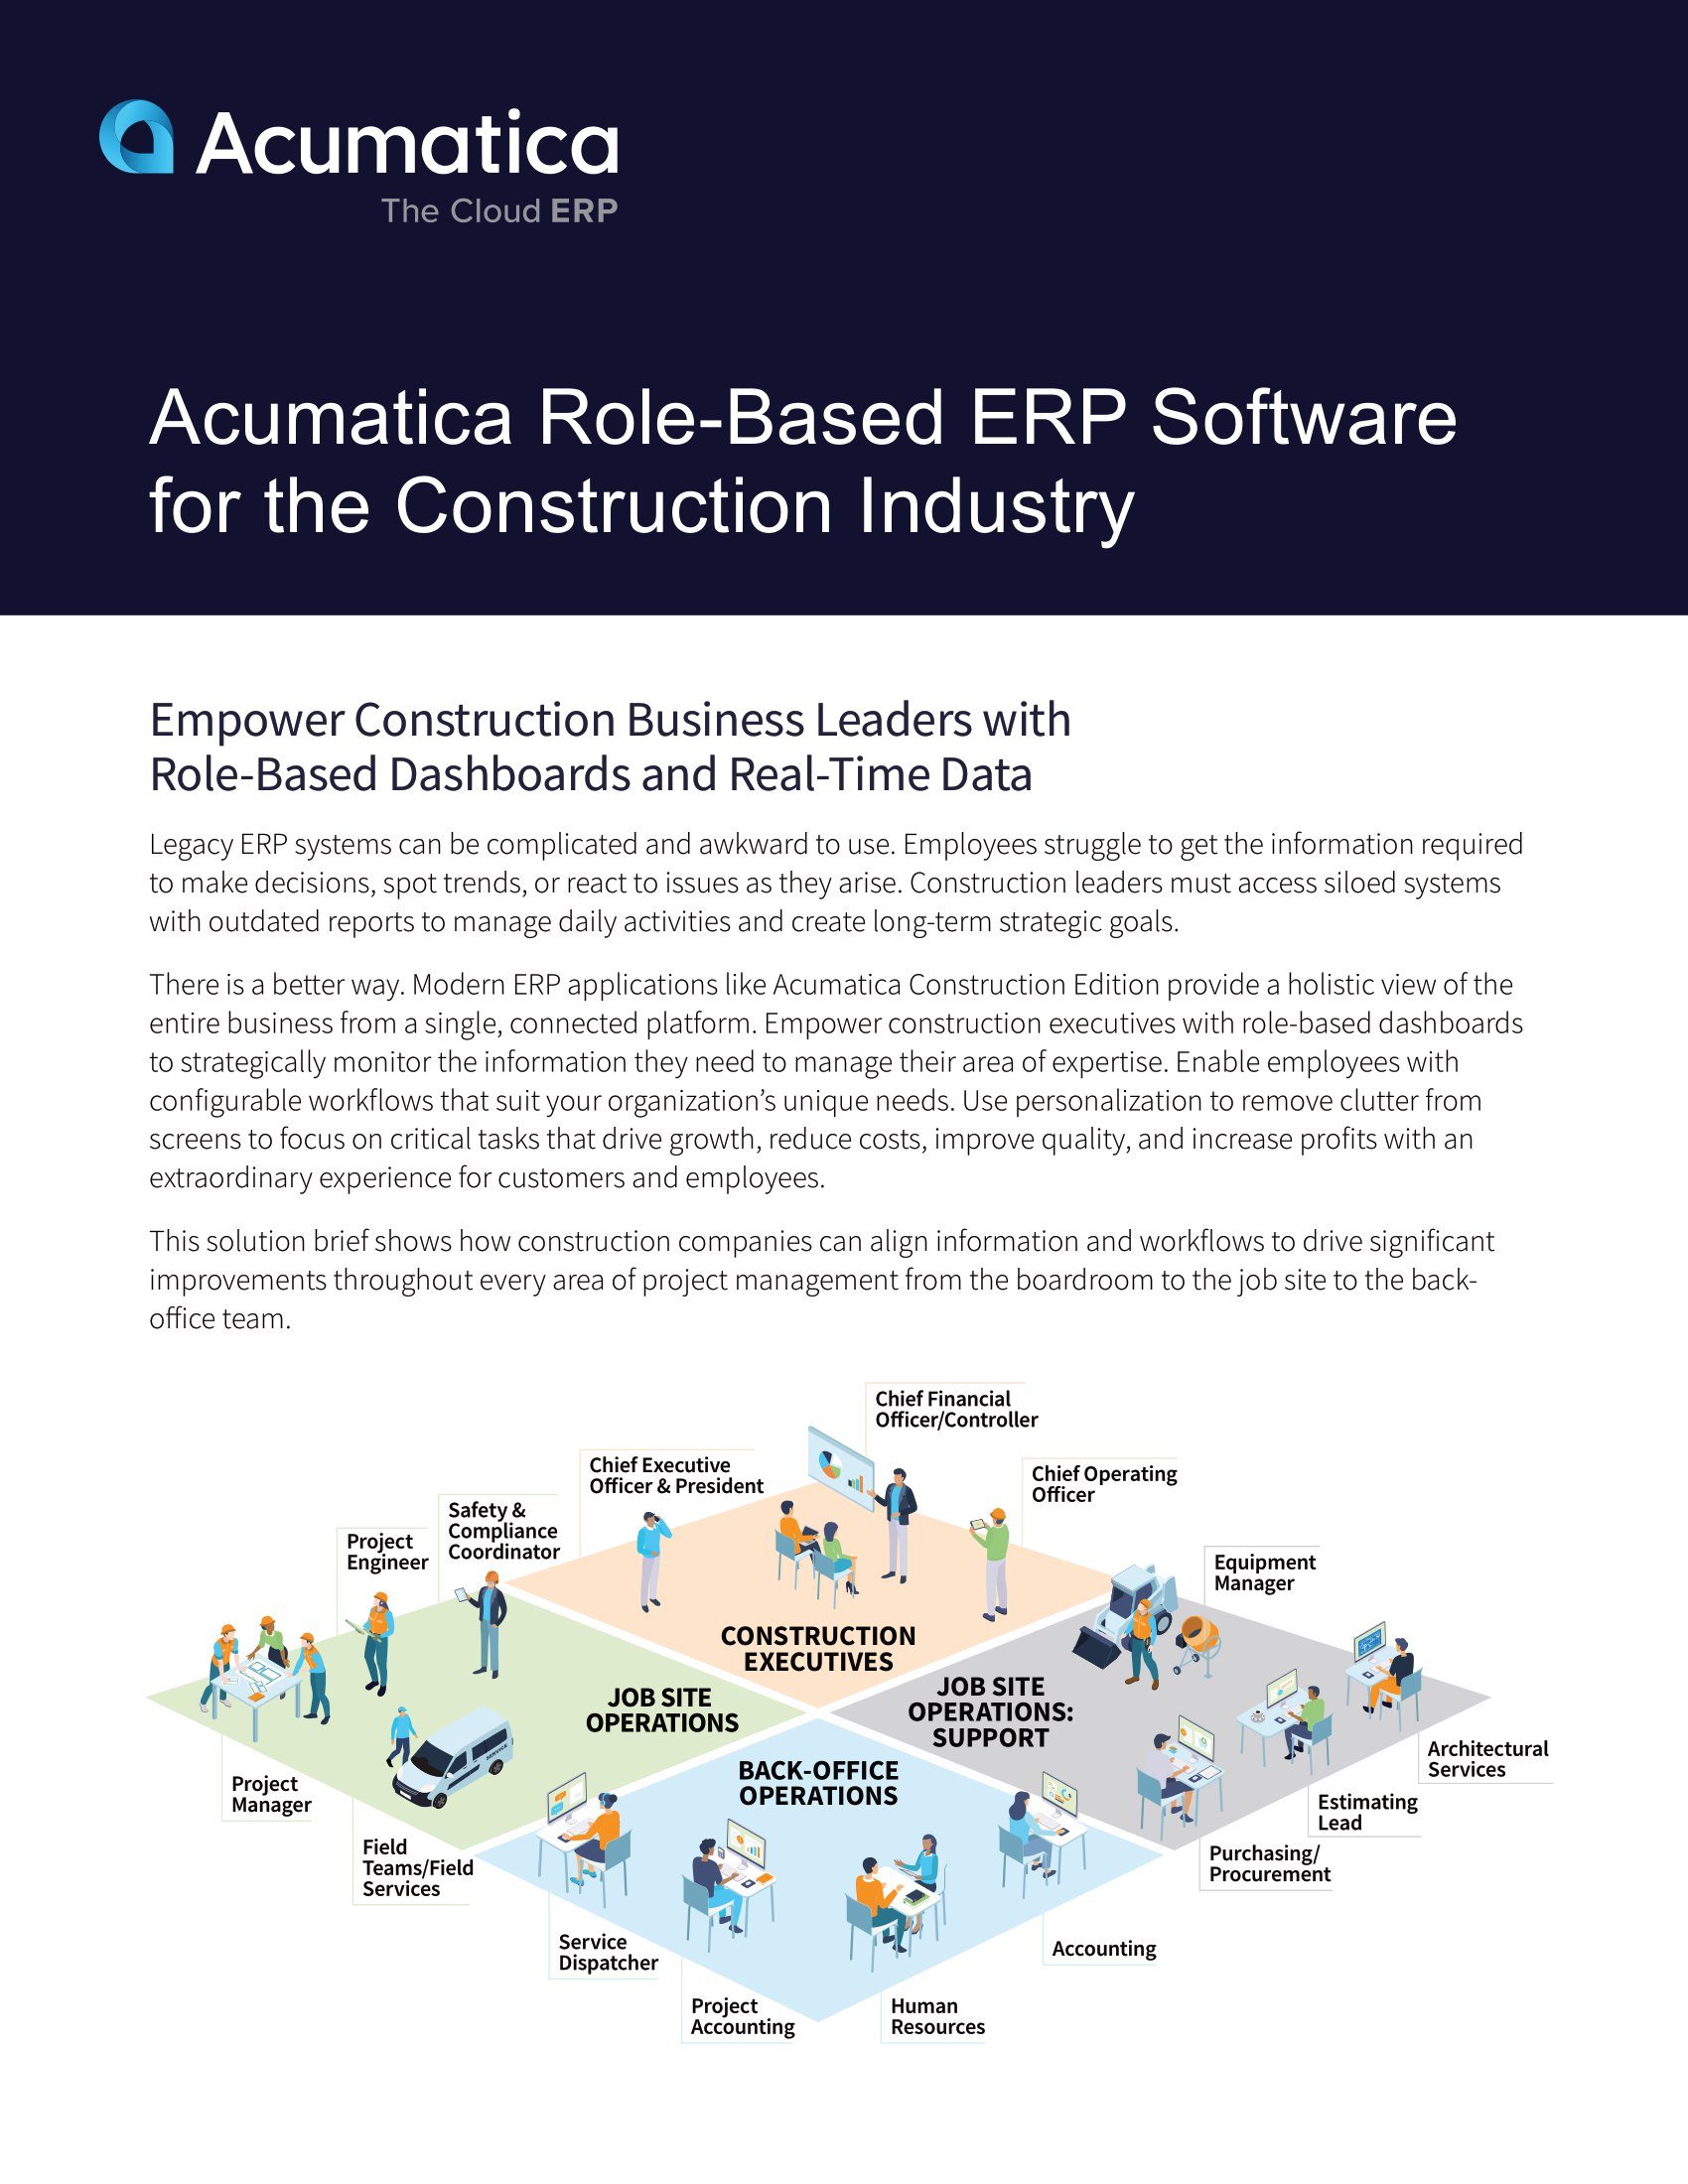 Un logiciel ERP moderne permet aux professionnels de la construction d'exercer des fonctions diverses